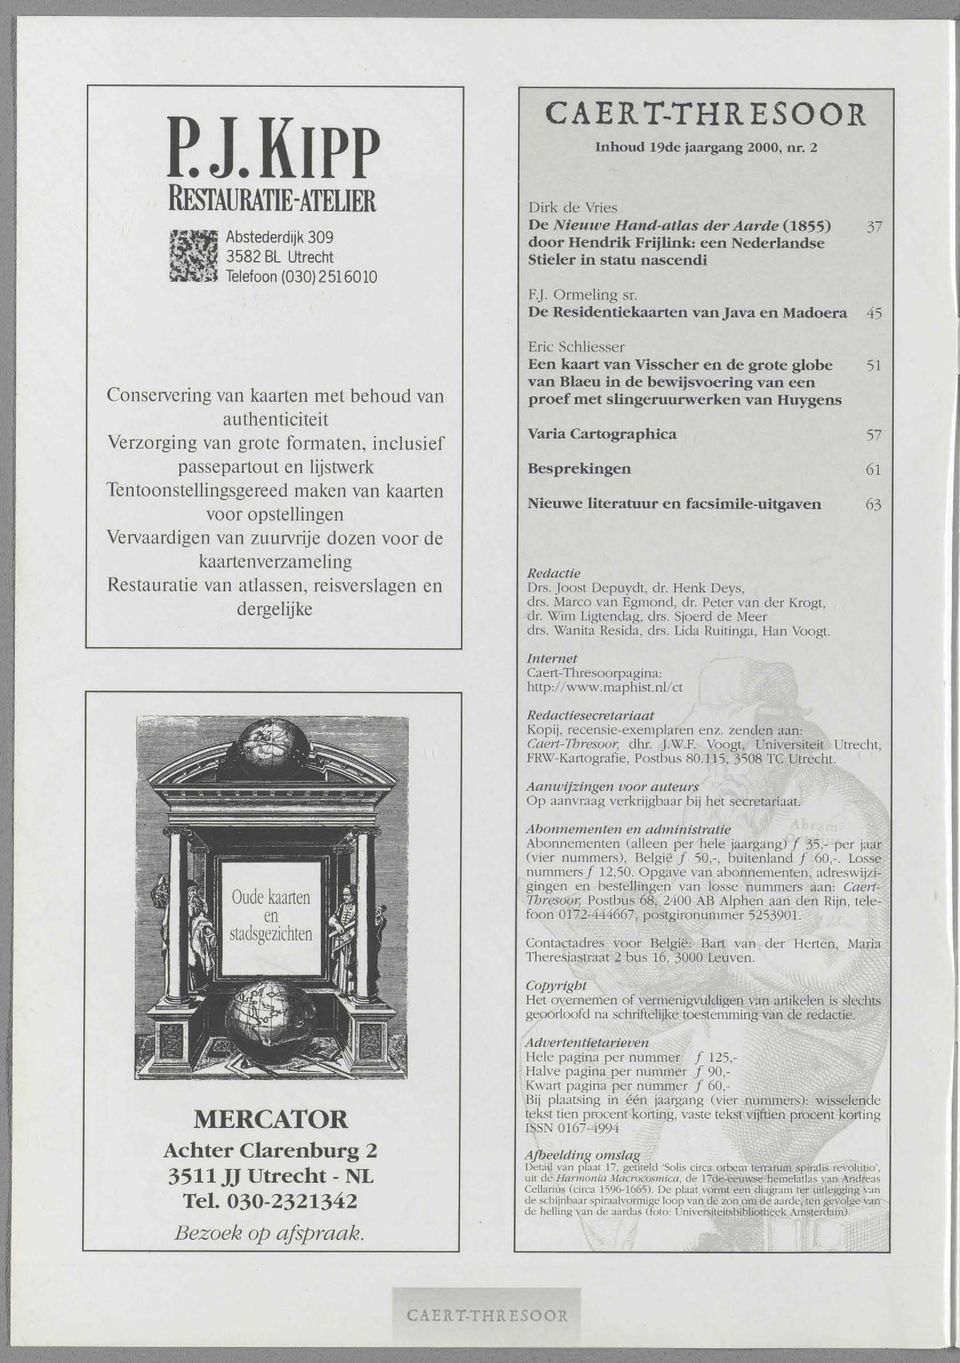 kaarten voor opstellingen Vervaardigen van zuurvrije dozen voor de kaartenverzameling Restauratie van atlassen, reisverslagen en dergelijke Inhoud 19de jaargang 2000, nr.